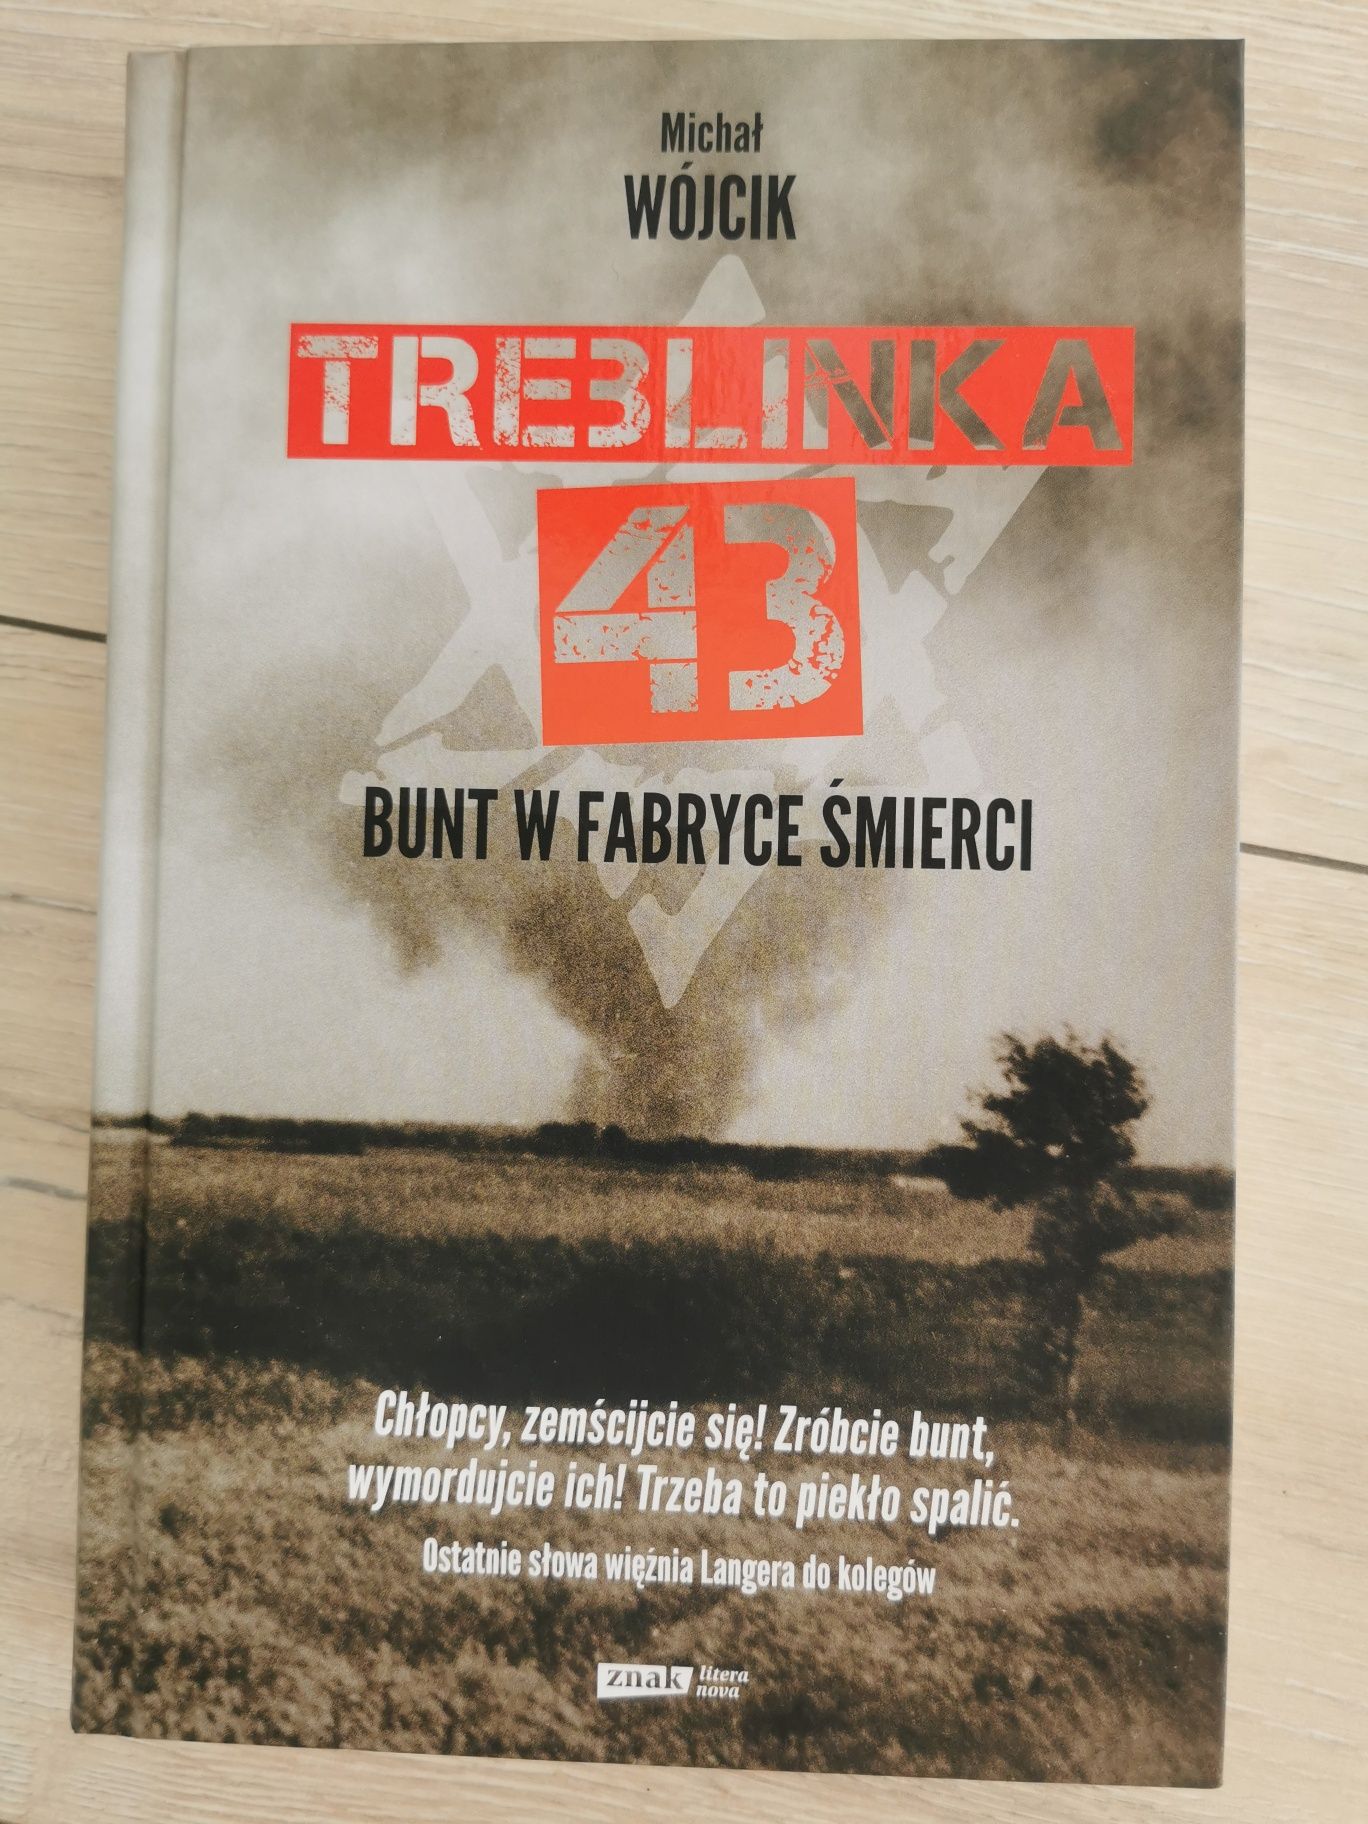 Książka Treblinka 43 Bunt w fabryce śmierci